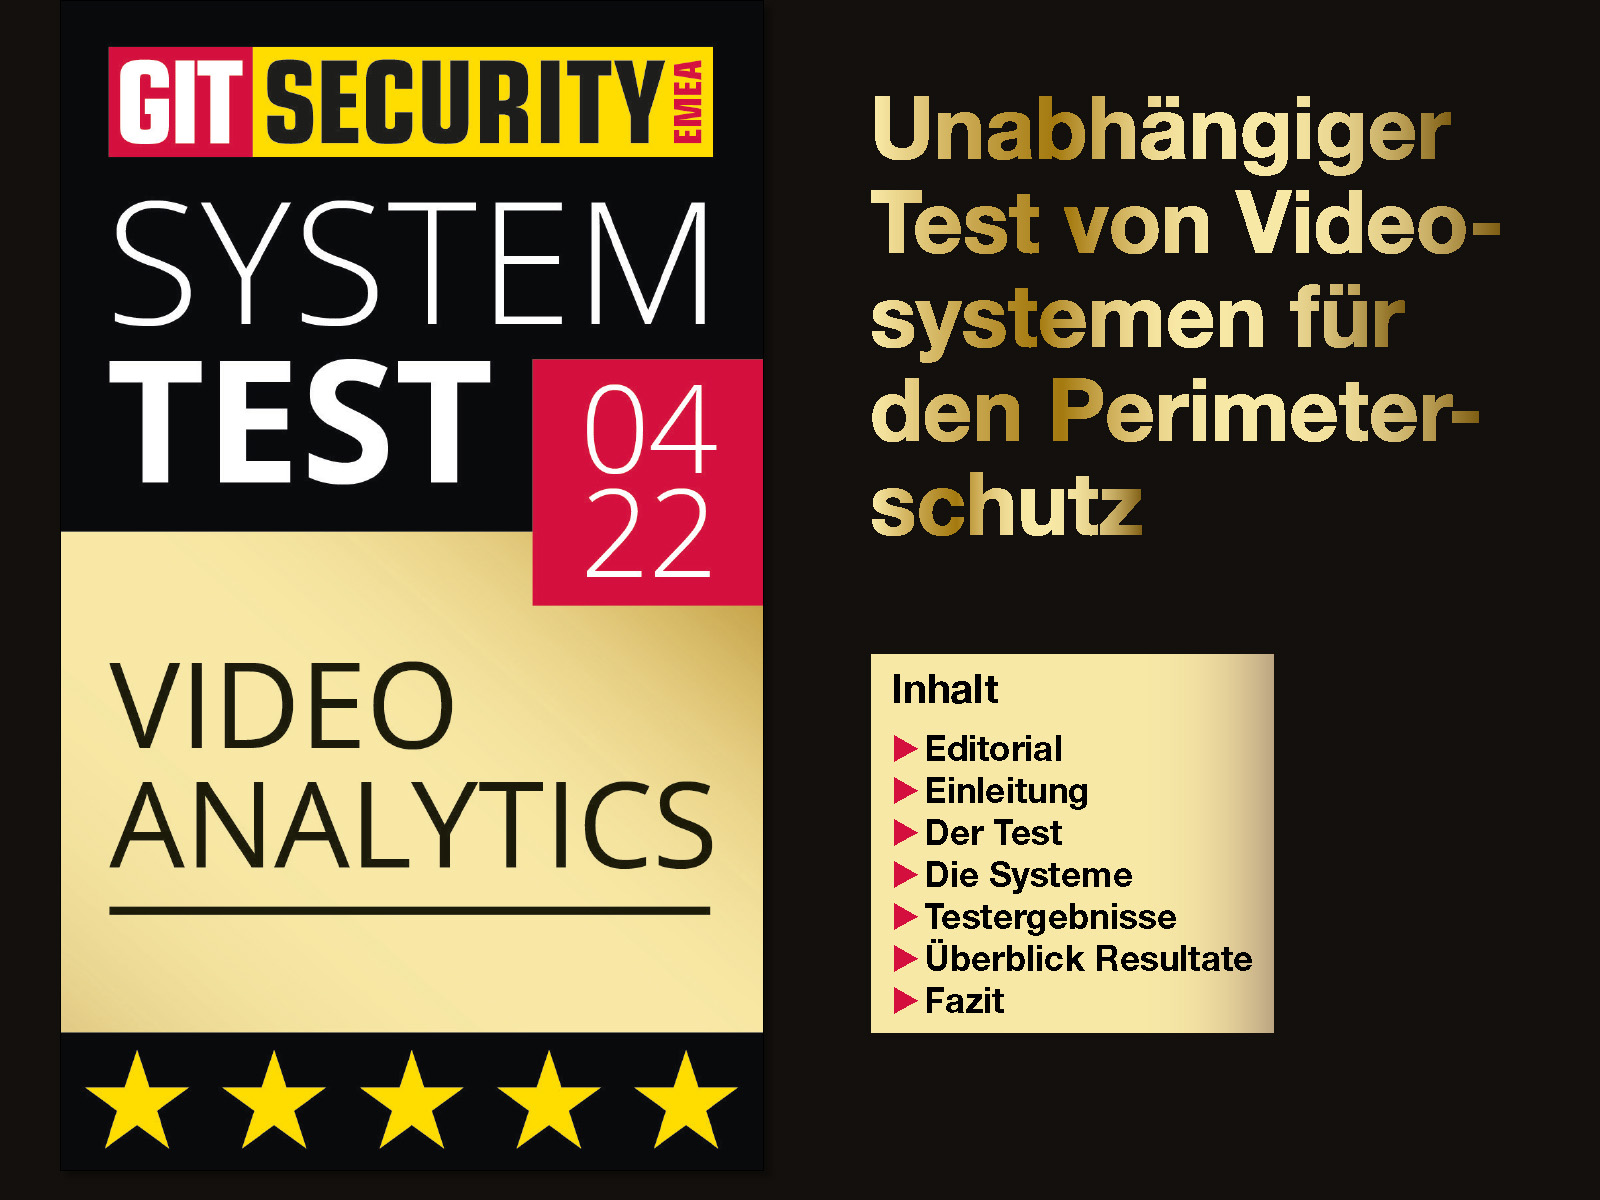 GIT System Test Video Analytics GSTVA